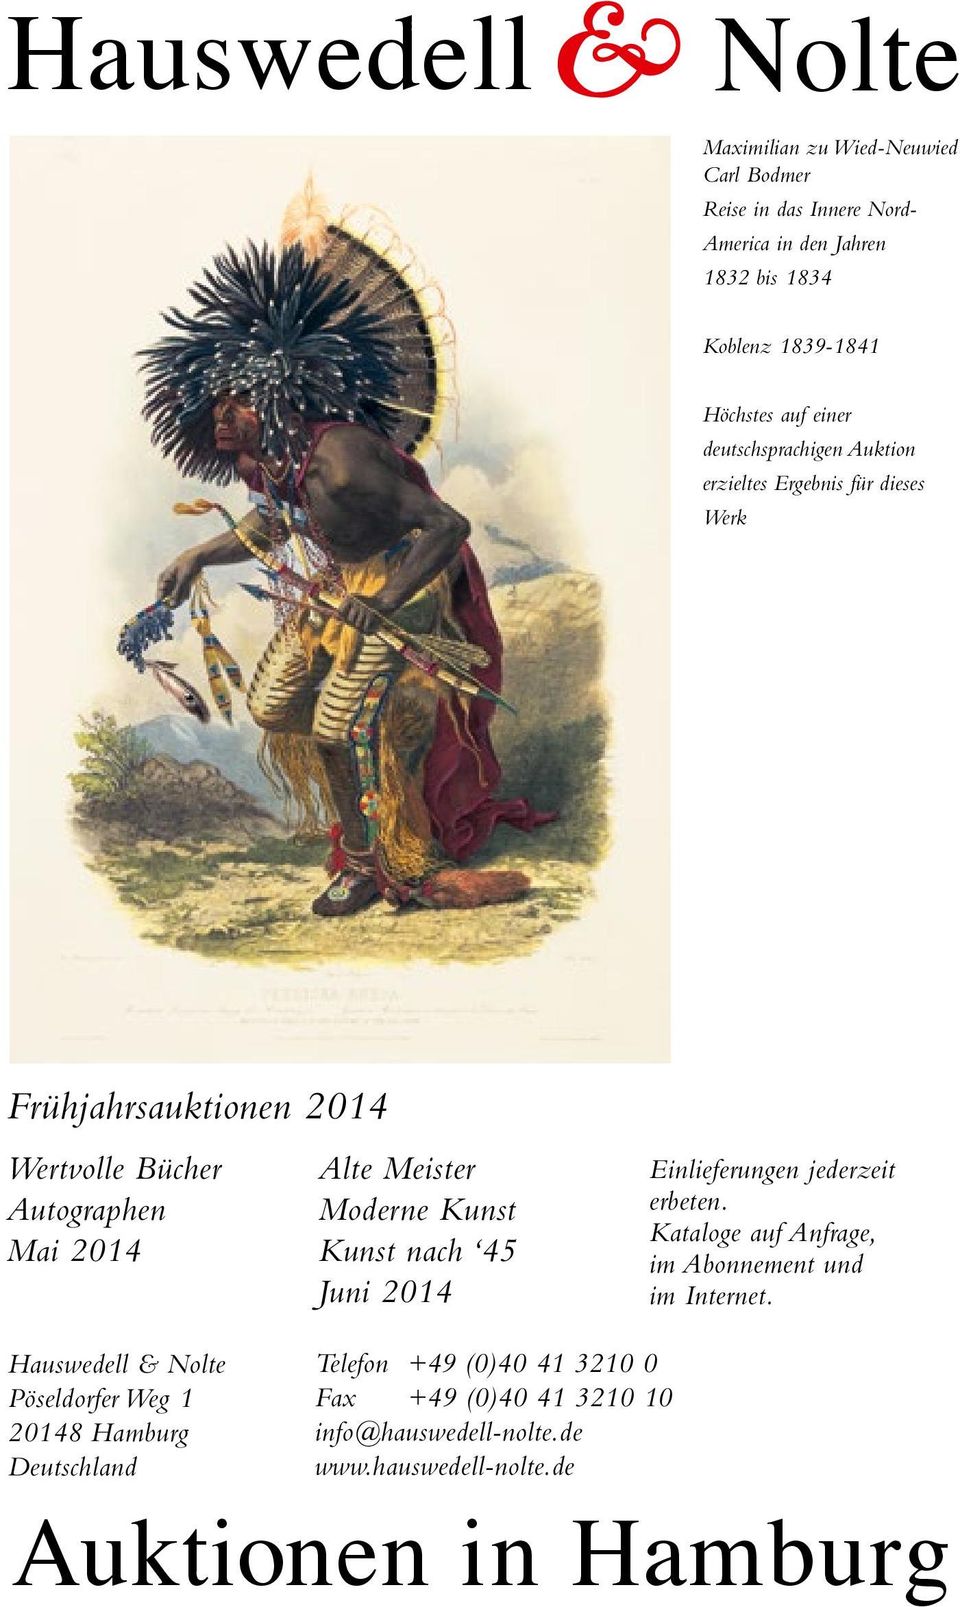 deutschsprachigen Auktion erzieltes Ergebnis für dieses Werk Frühjahrsauktionen 2014 Wertvolle Bücher Autographen Mai 2014 Alte Meister Moderne Kunst Kunst nach 45 Juni